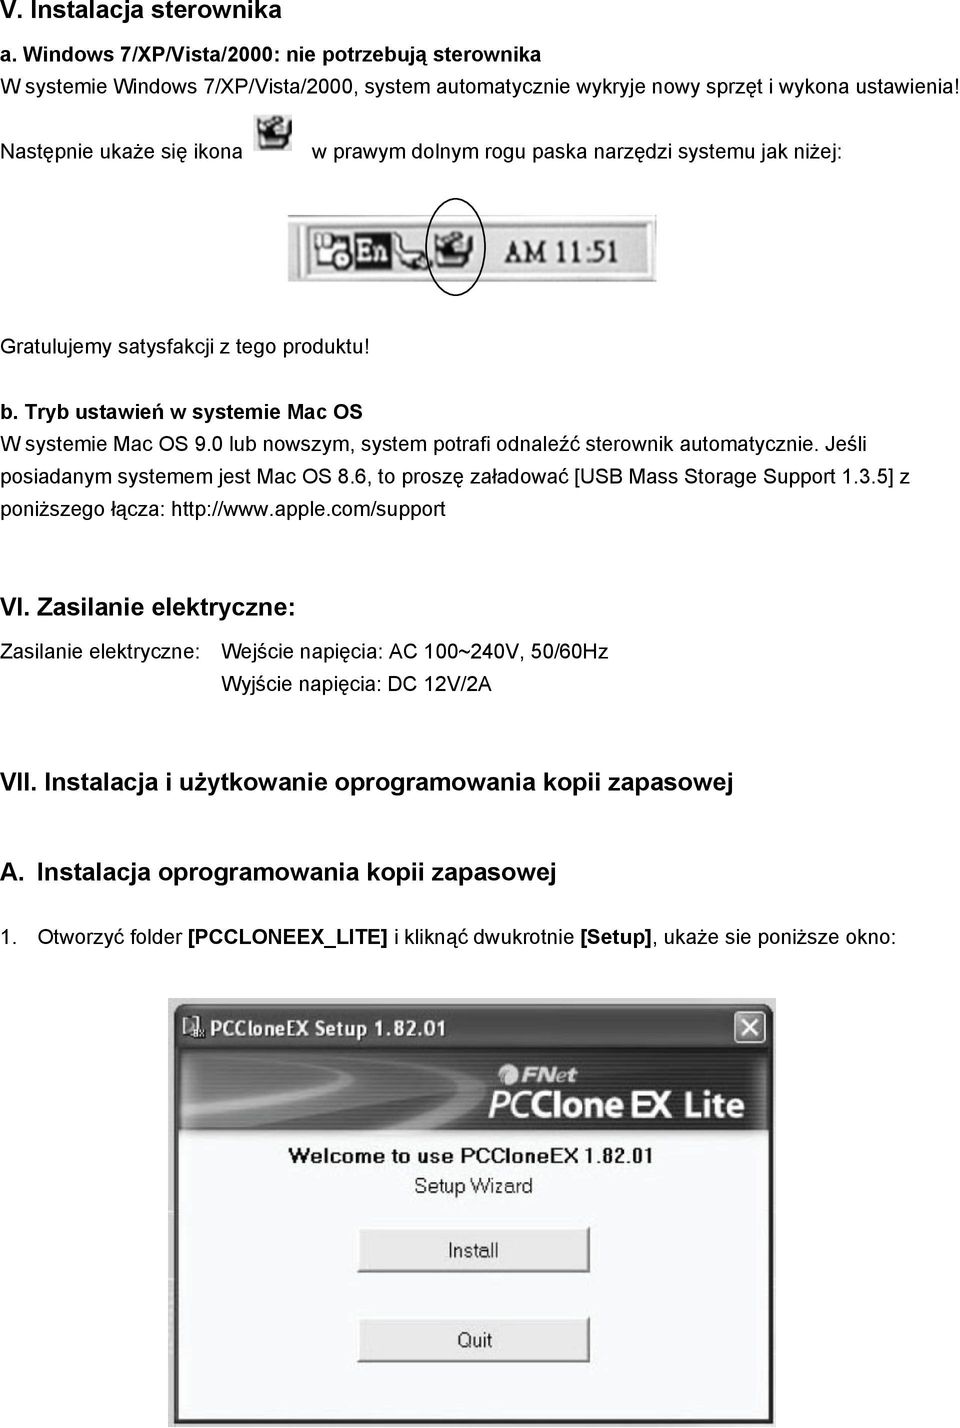 0 lub nowszym, system potrafi odnaleźć sterownik automatycznie. Jeśli posiadanym systemem jest Mac OS 8.6, to proszę załadować [USB Mass Storage Support 1.3.5] z poniższego łącza: http://www.apple.